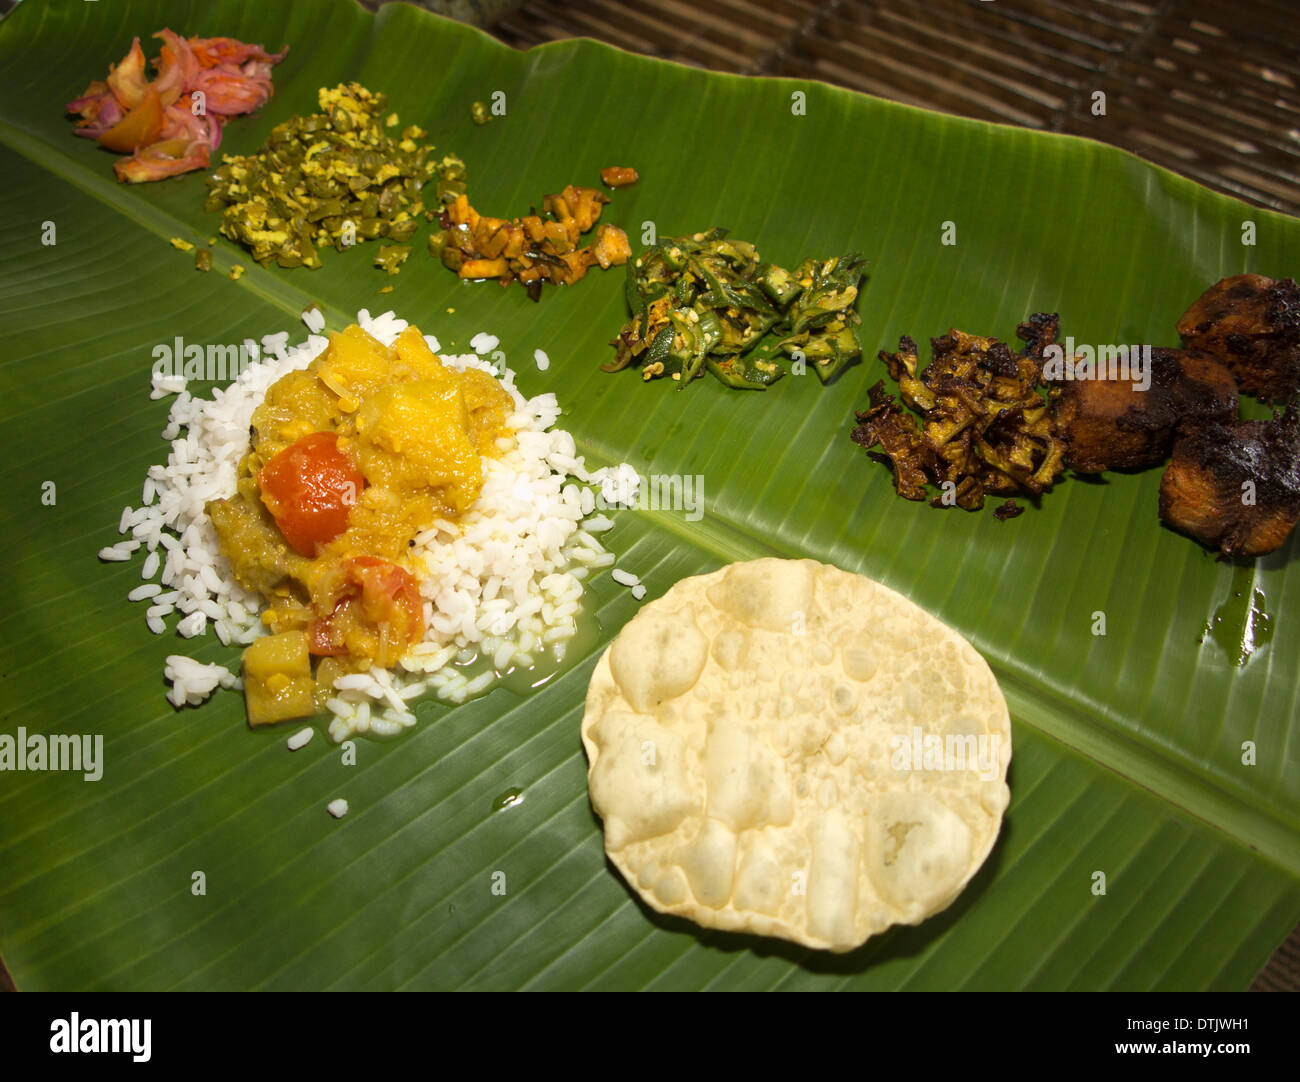 L'Inde, le Kerala, du sud de l'Inde, repas servi sur des feuilles de banane Banque D'Images